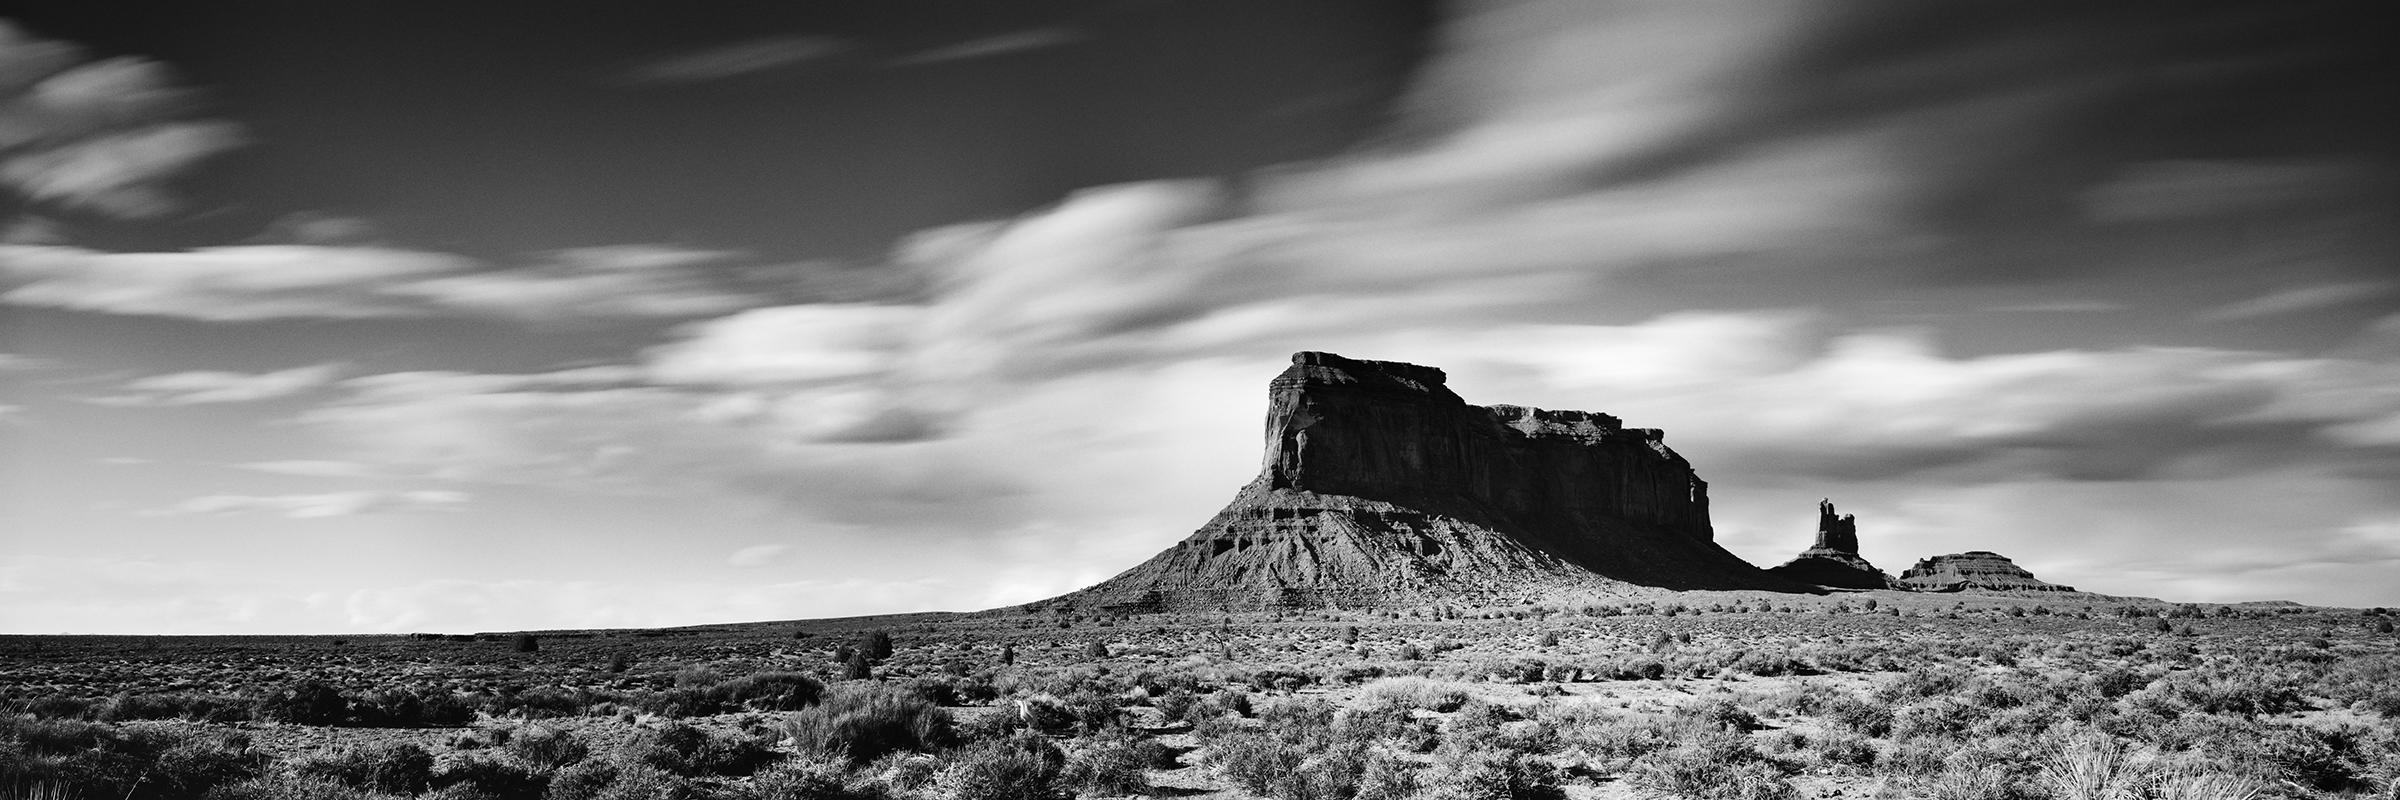 Landscape Photograph Gerald Berghammer - Panorama du Far West, Utah, Monument Valley, paysage minimaliste en noir et blanc	